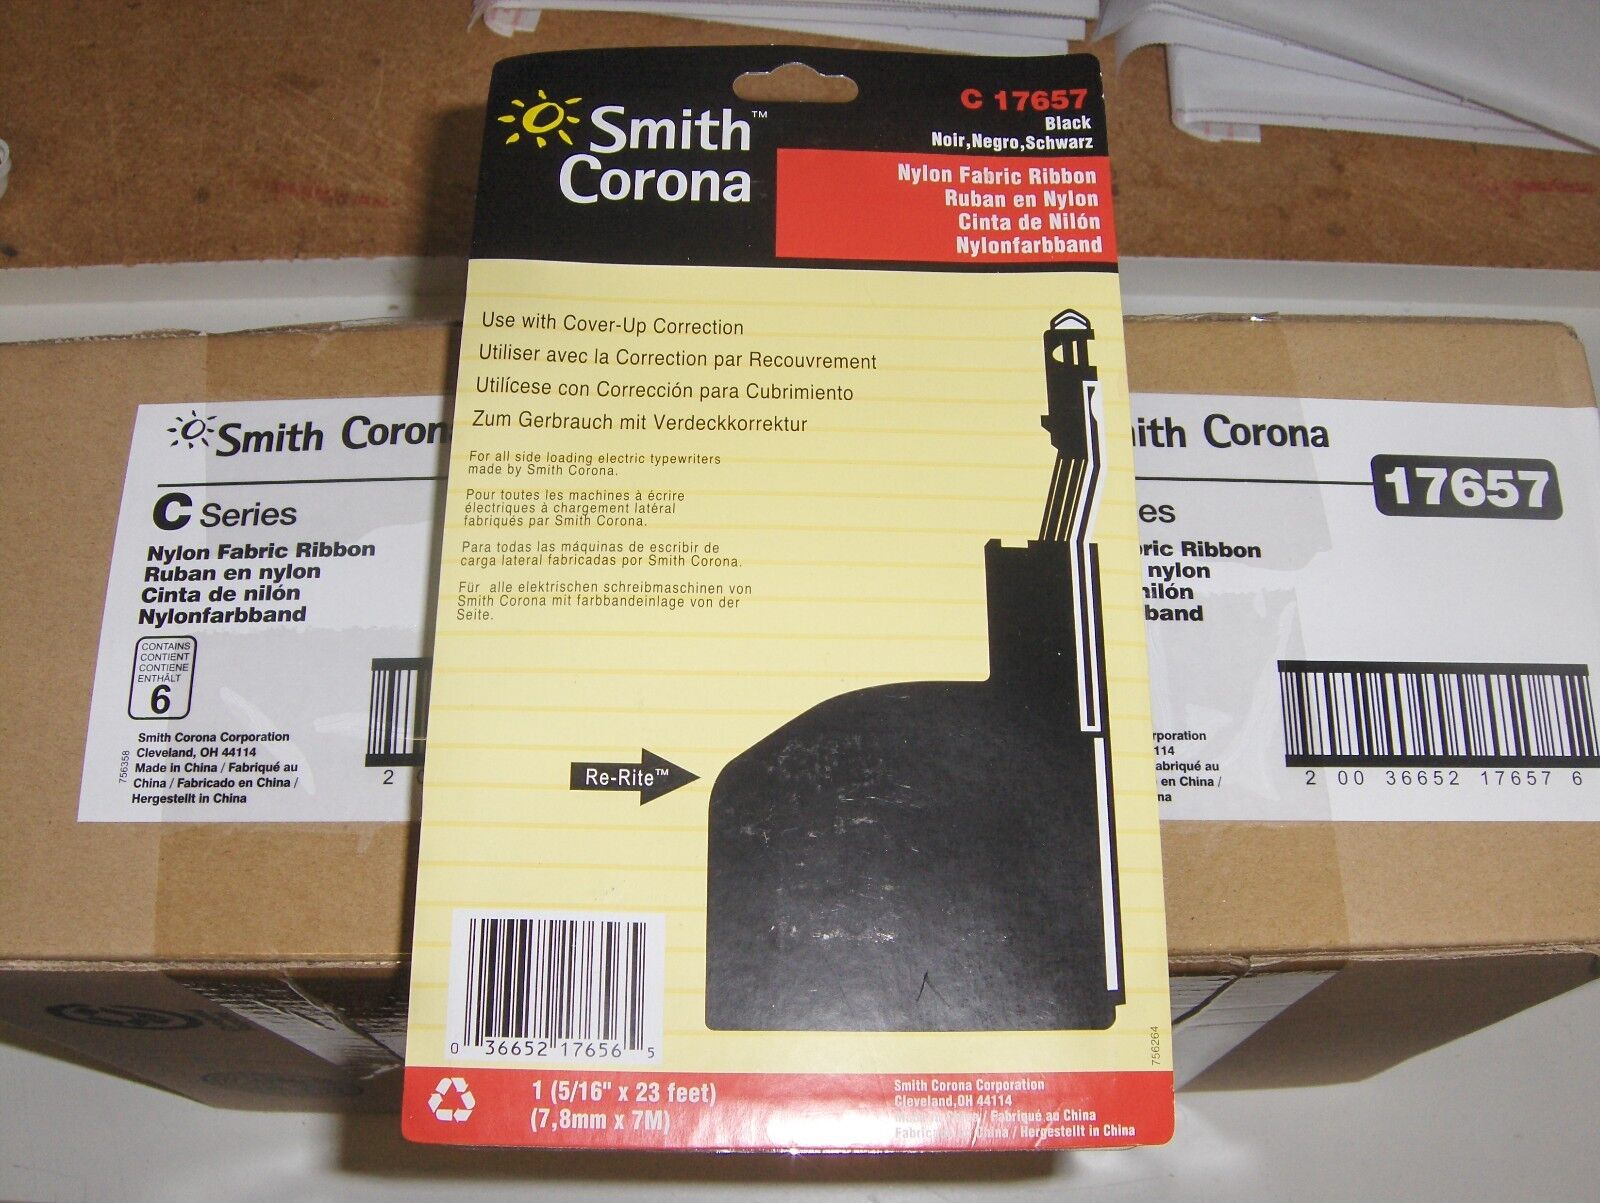 Smith Corona Sterling C420, SC Sterling C420 - Black Typewriter Ribbon Cartridge